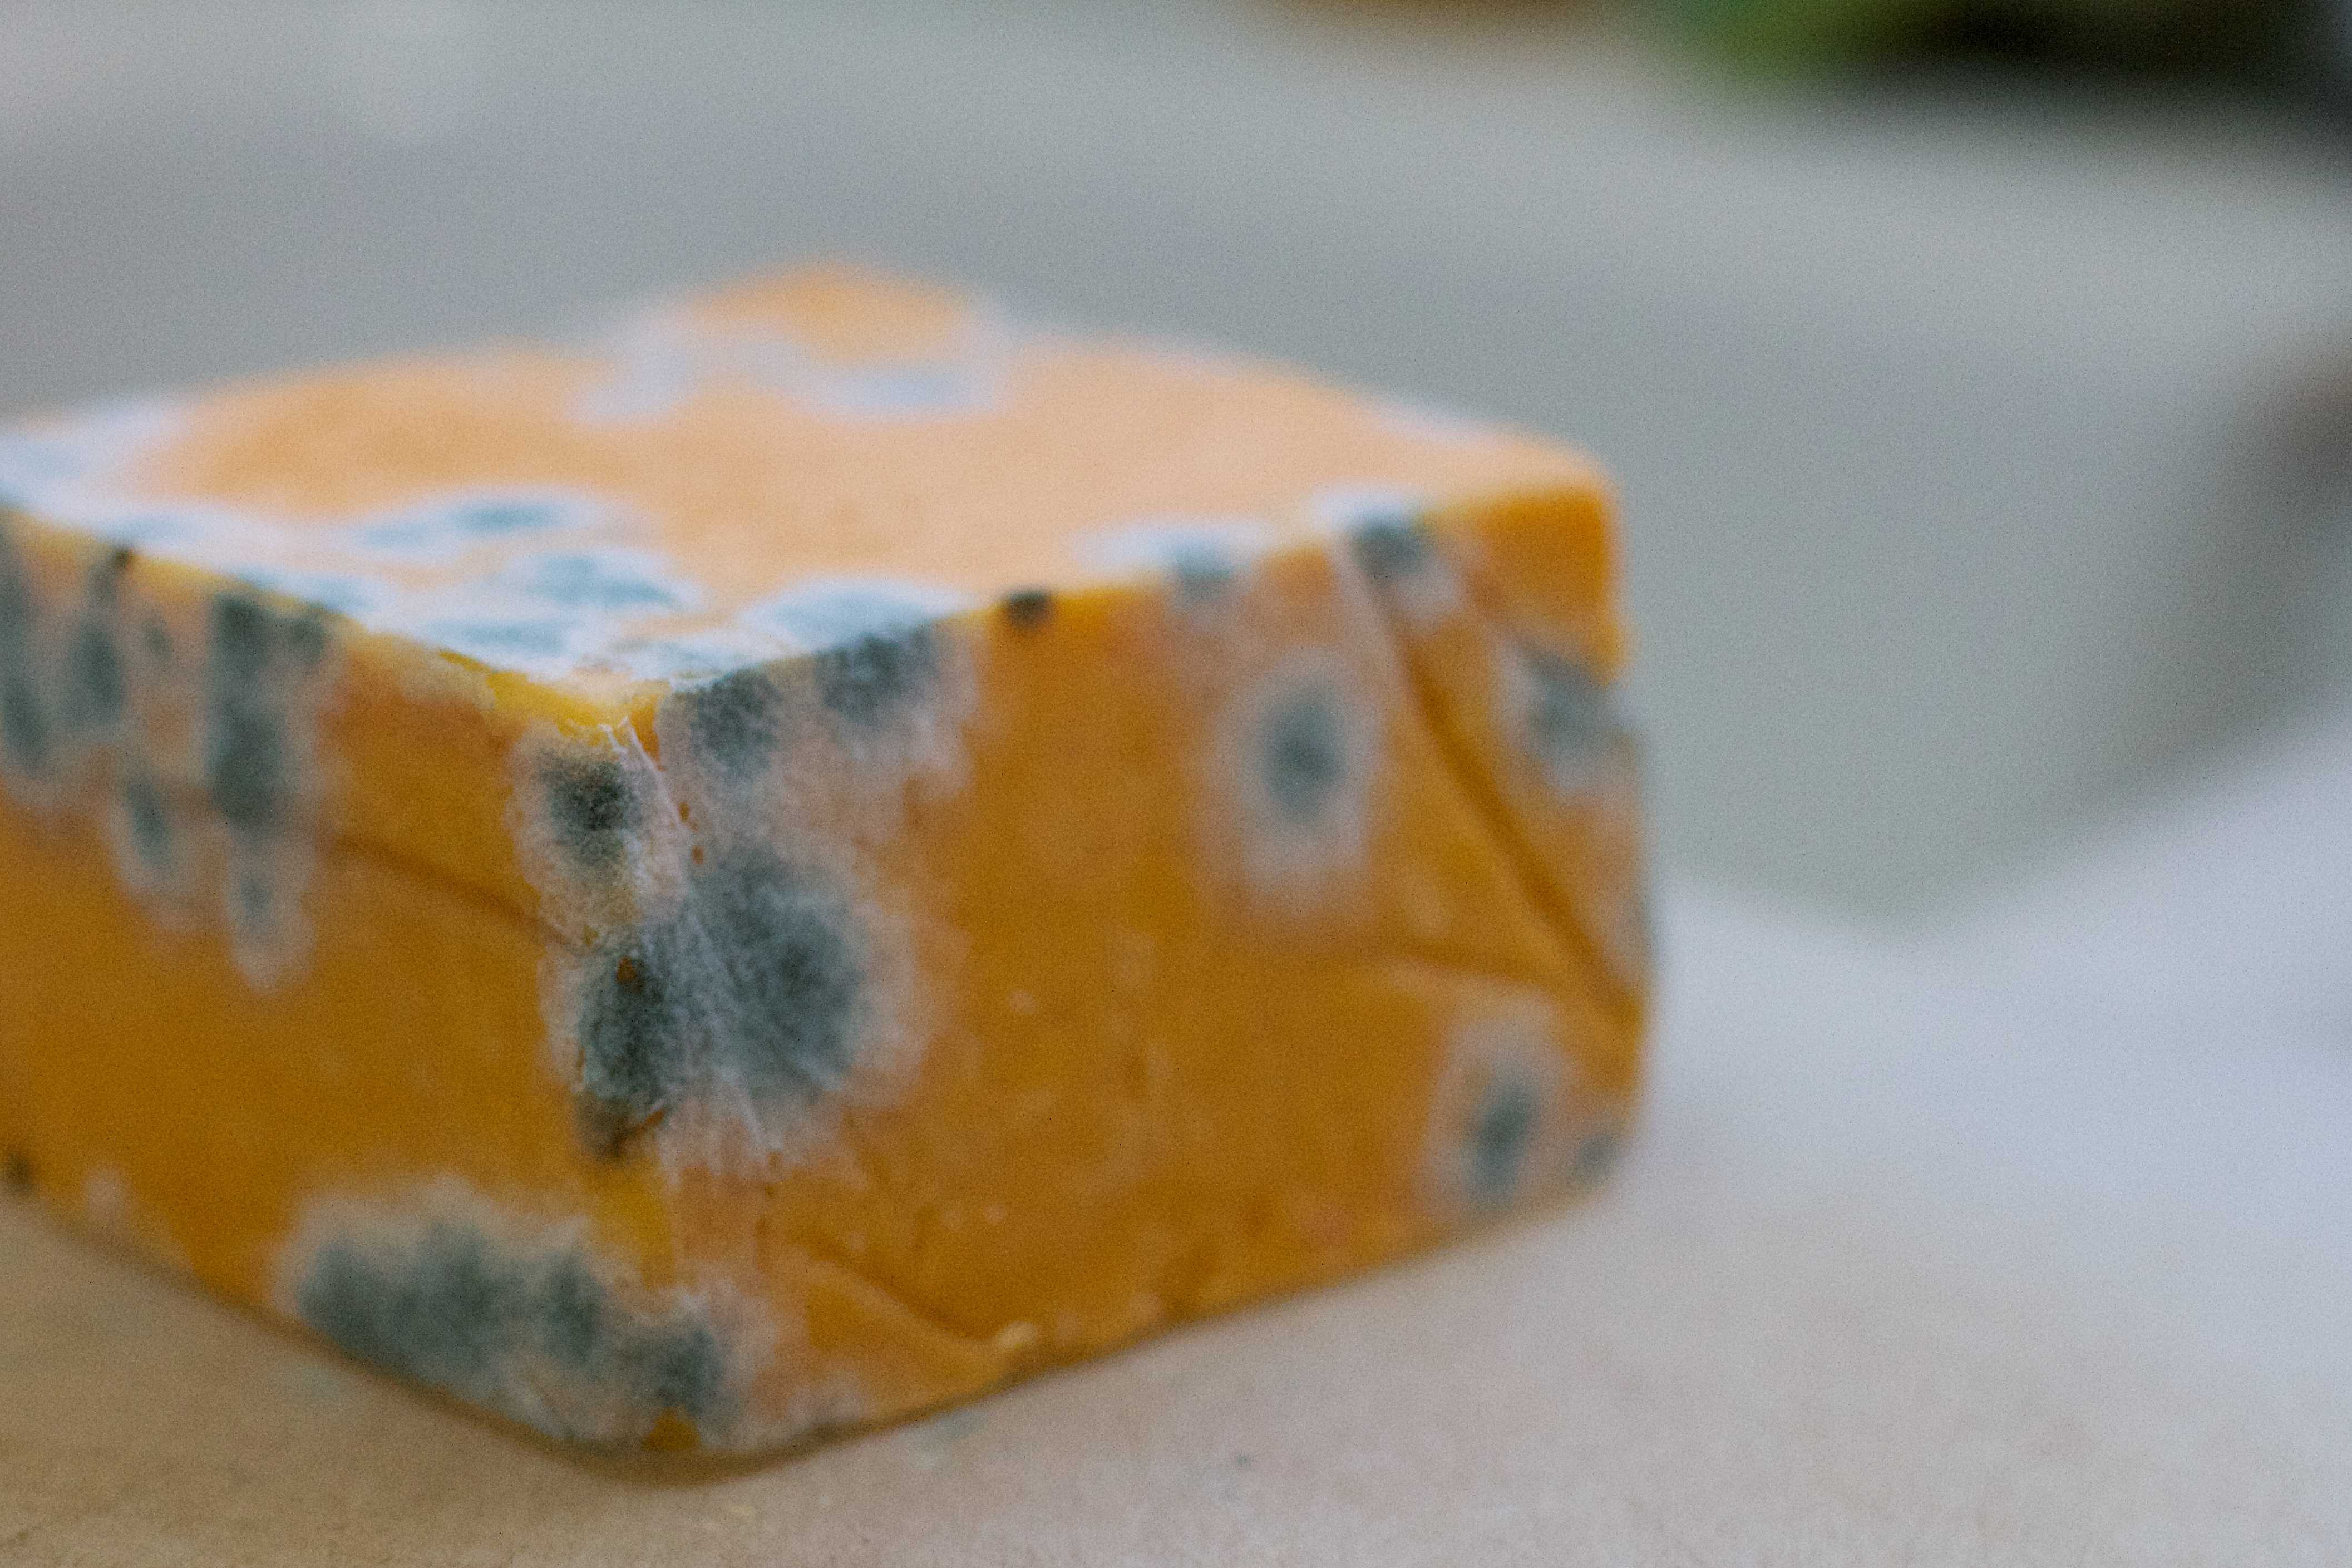 Правила долгого хранения сыра разных сортов в холодильнике и не только